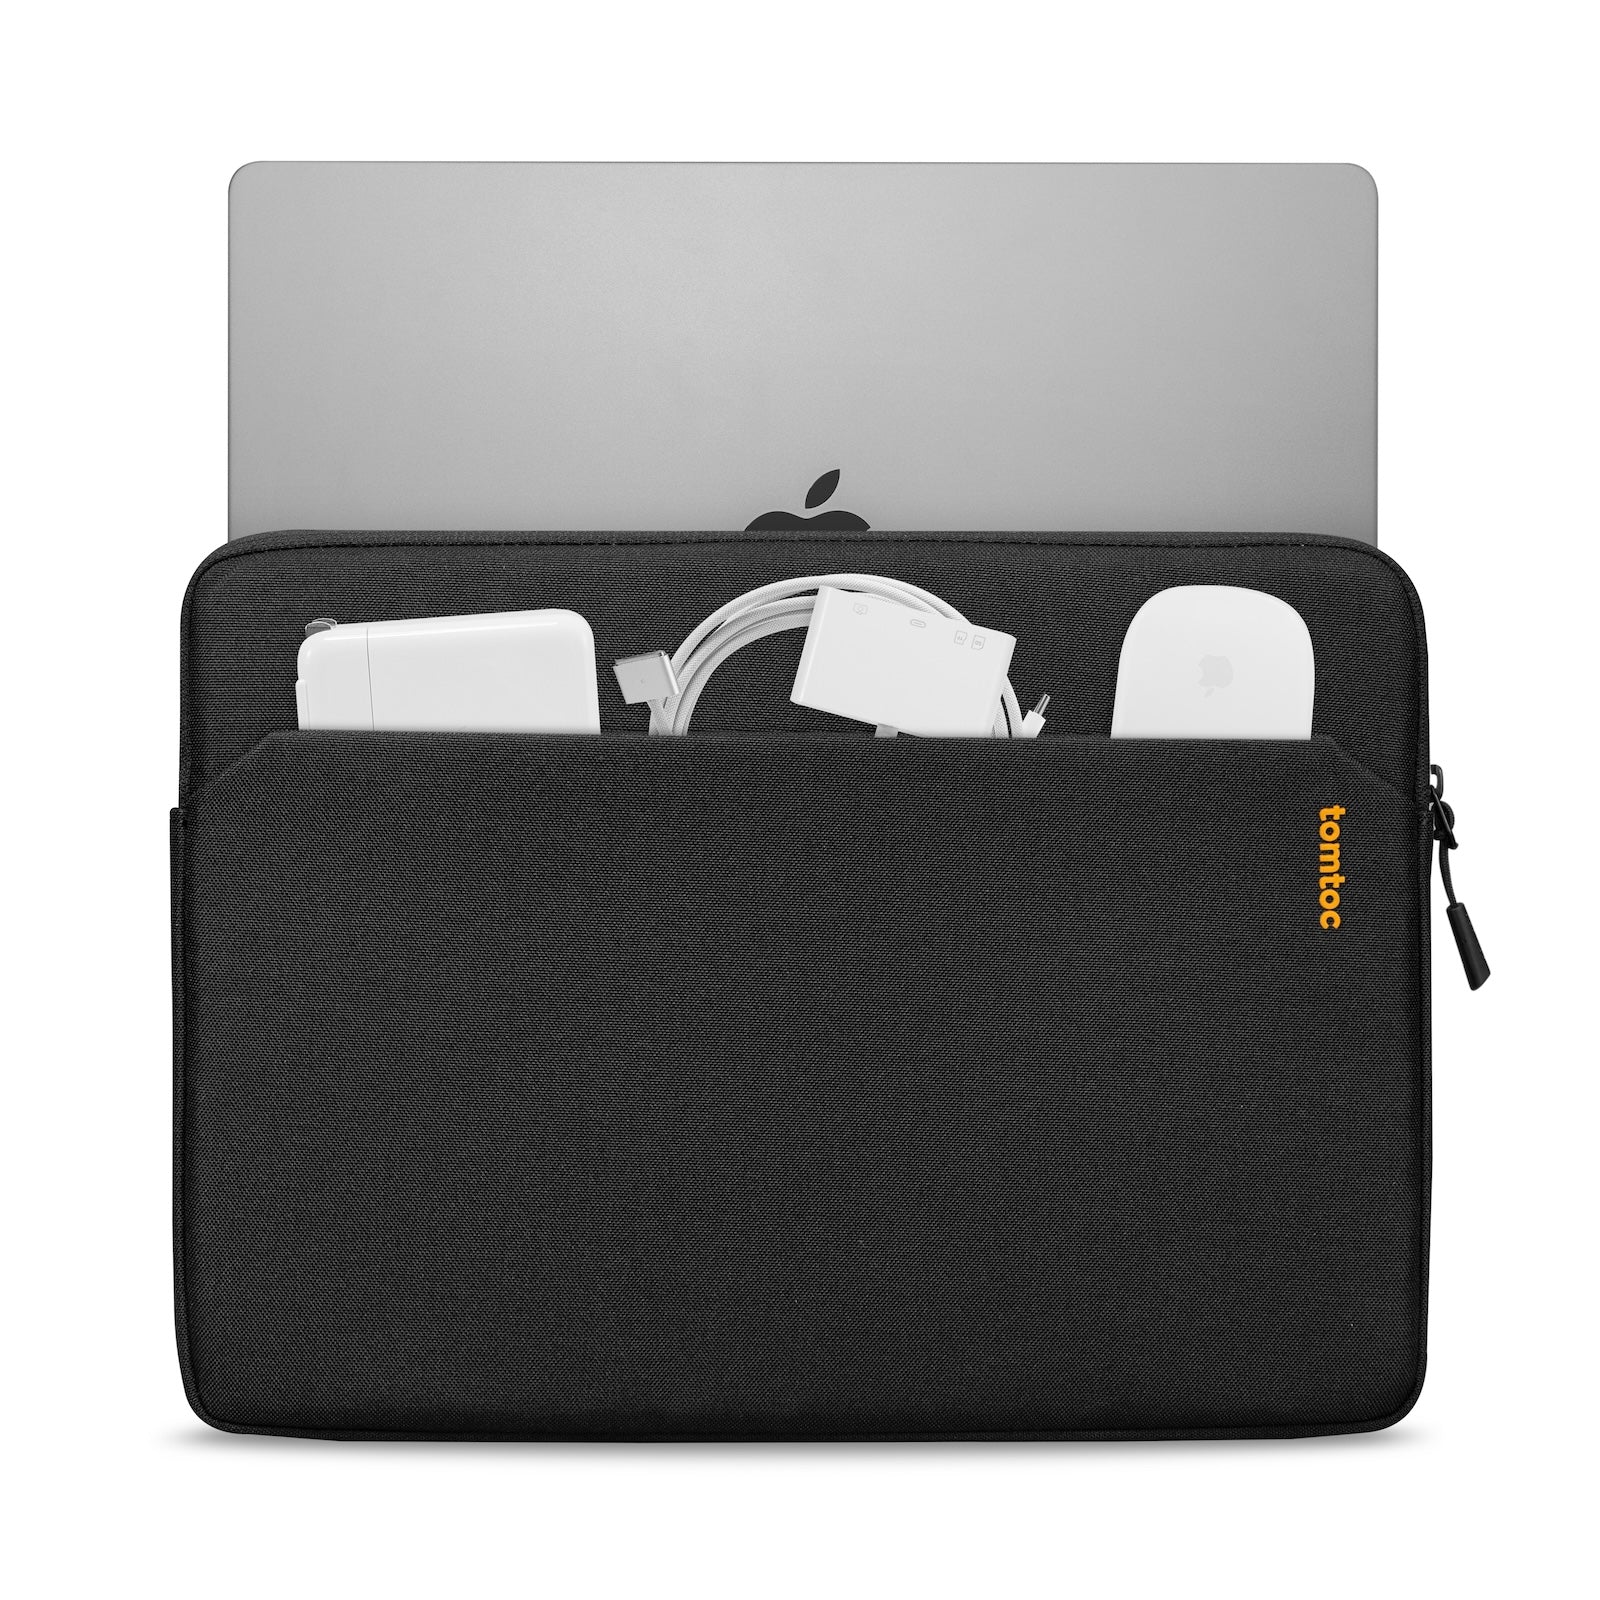 Tomtoc A18 - 14 inç Siyah Light MacBook Kılıfı